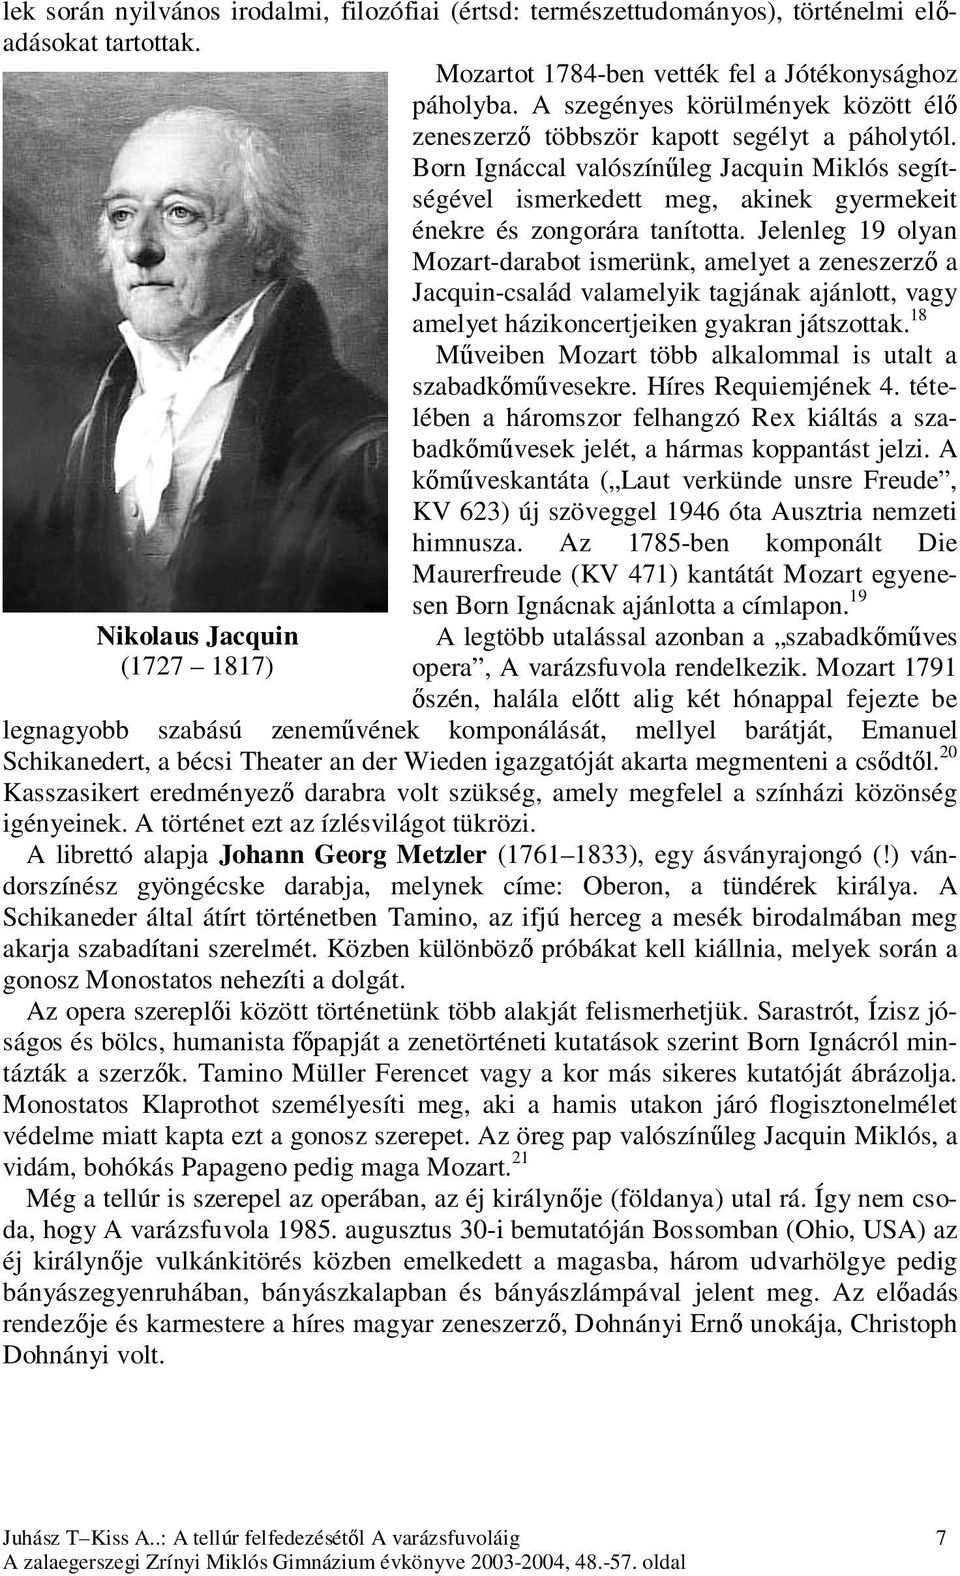 Born Ignáccal valószínűleg Jacquin Miklós segítségével ismerkedett meg, akinek gyermekeit énekre és zongorára tanította.